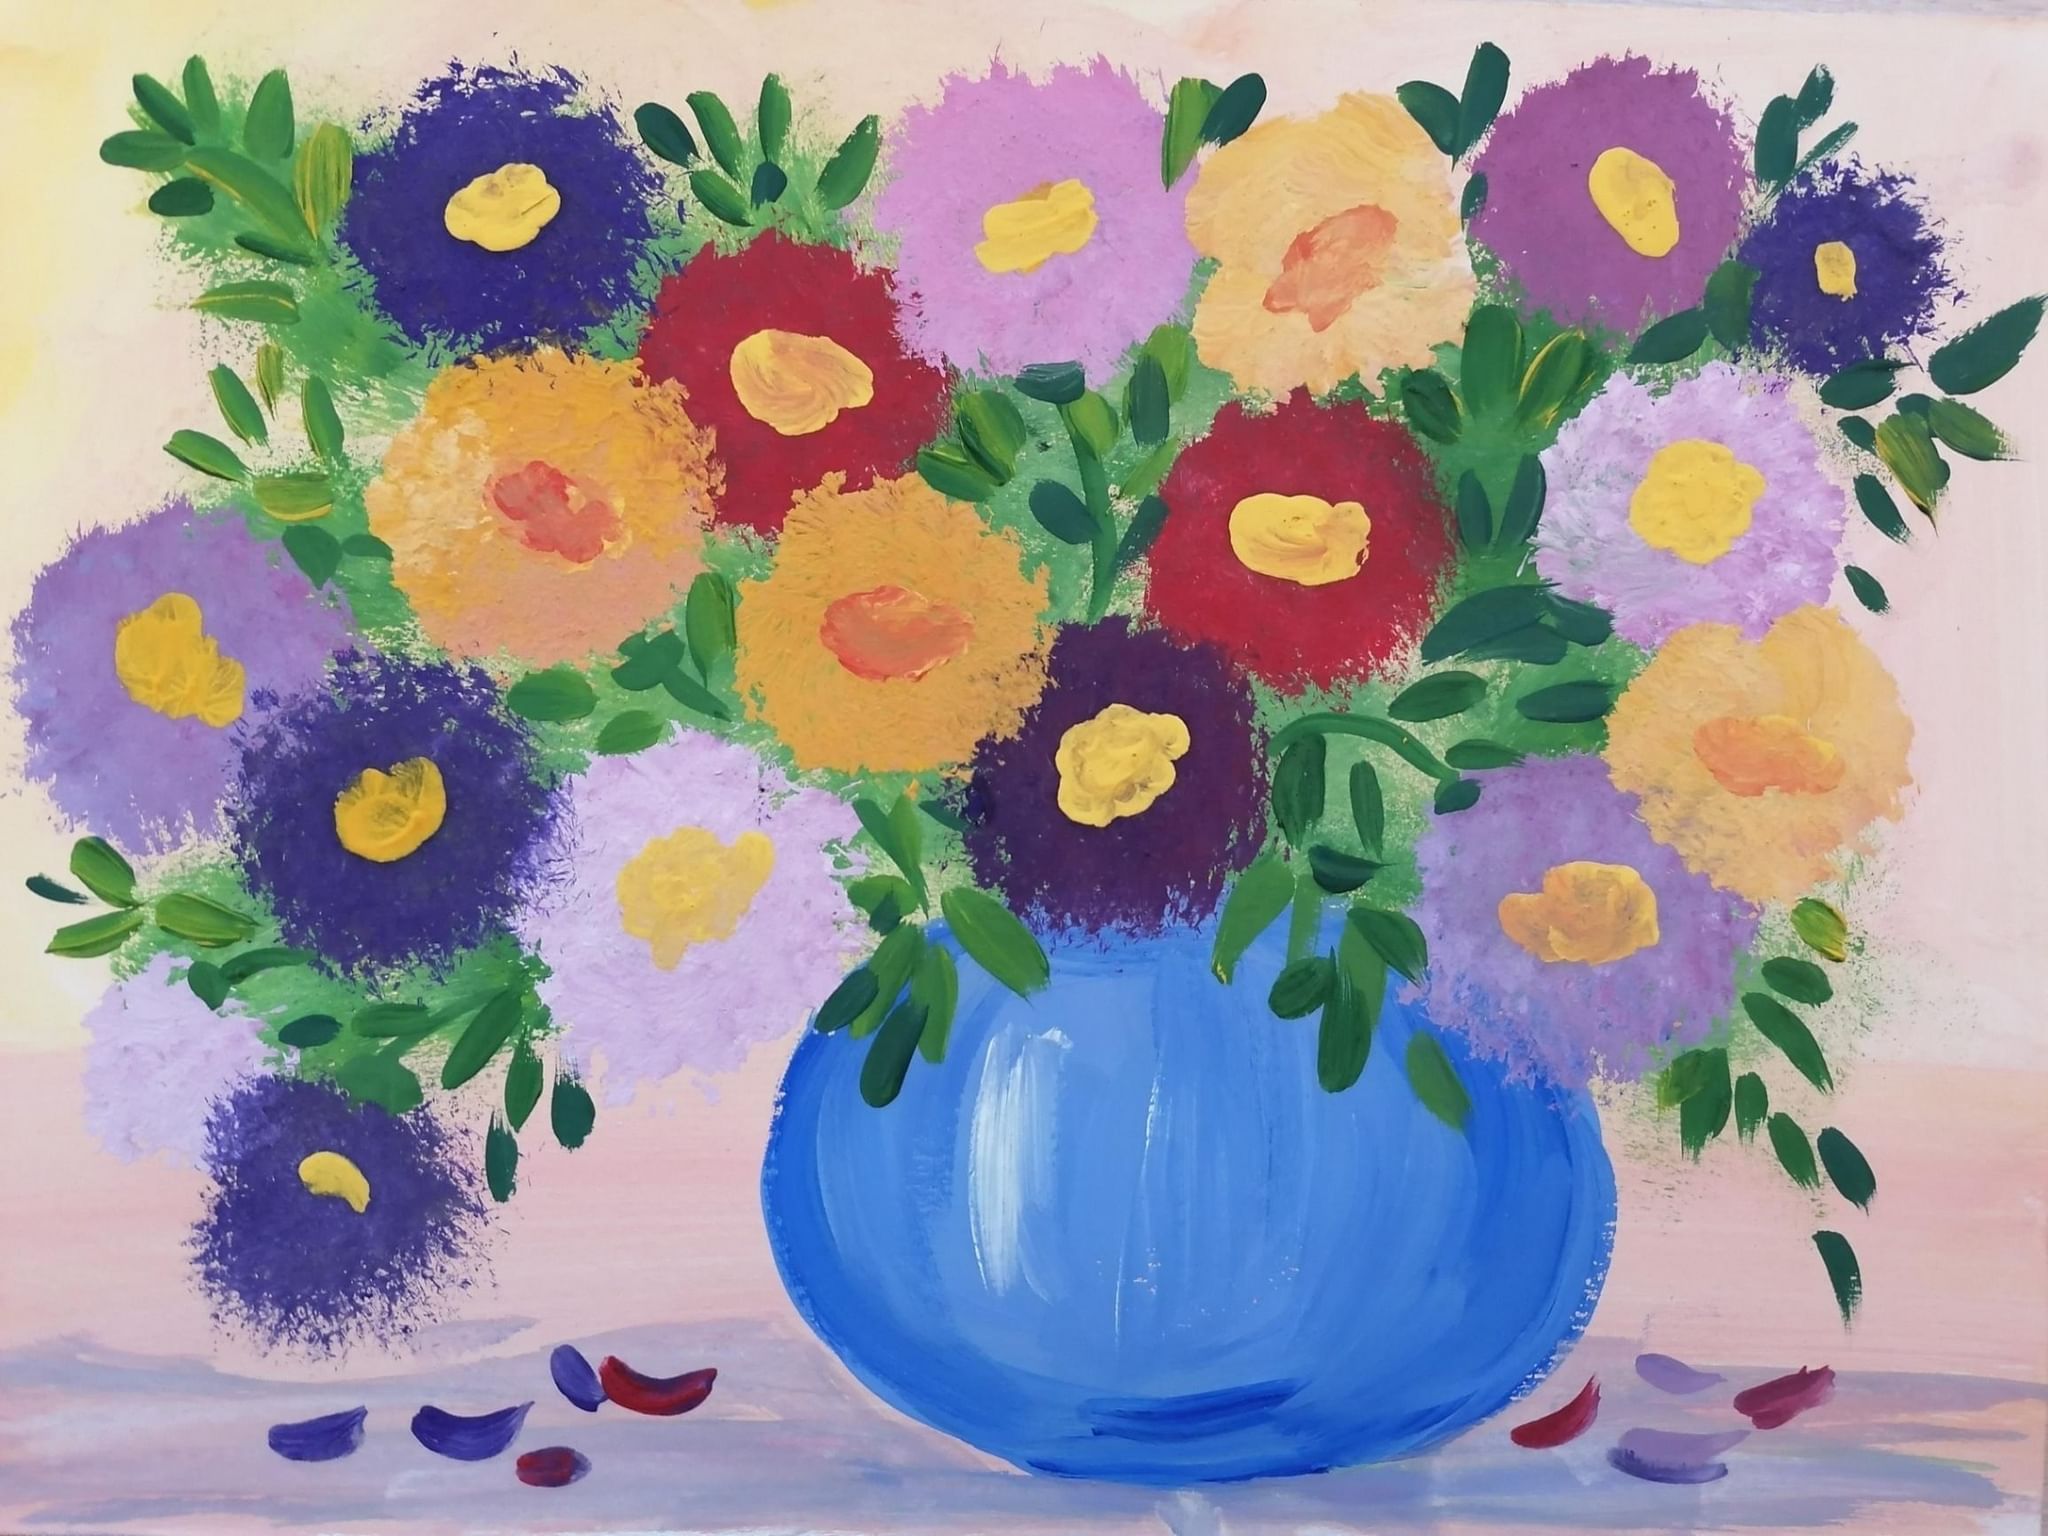 Как нарисовать цветок пошагово: мастер-класс по рисованию для начинающих